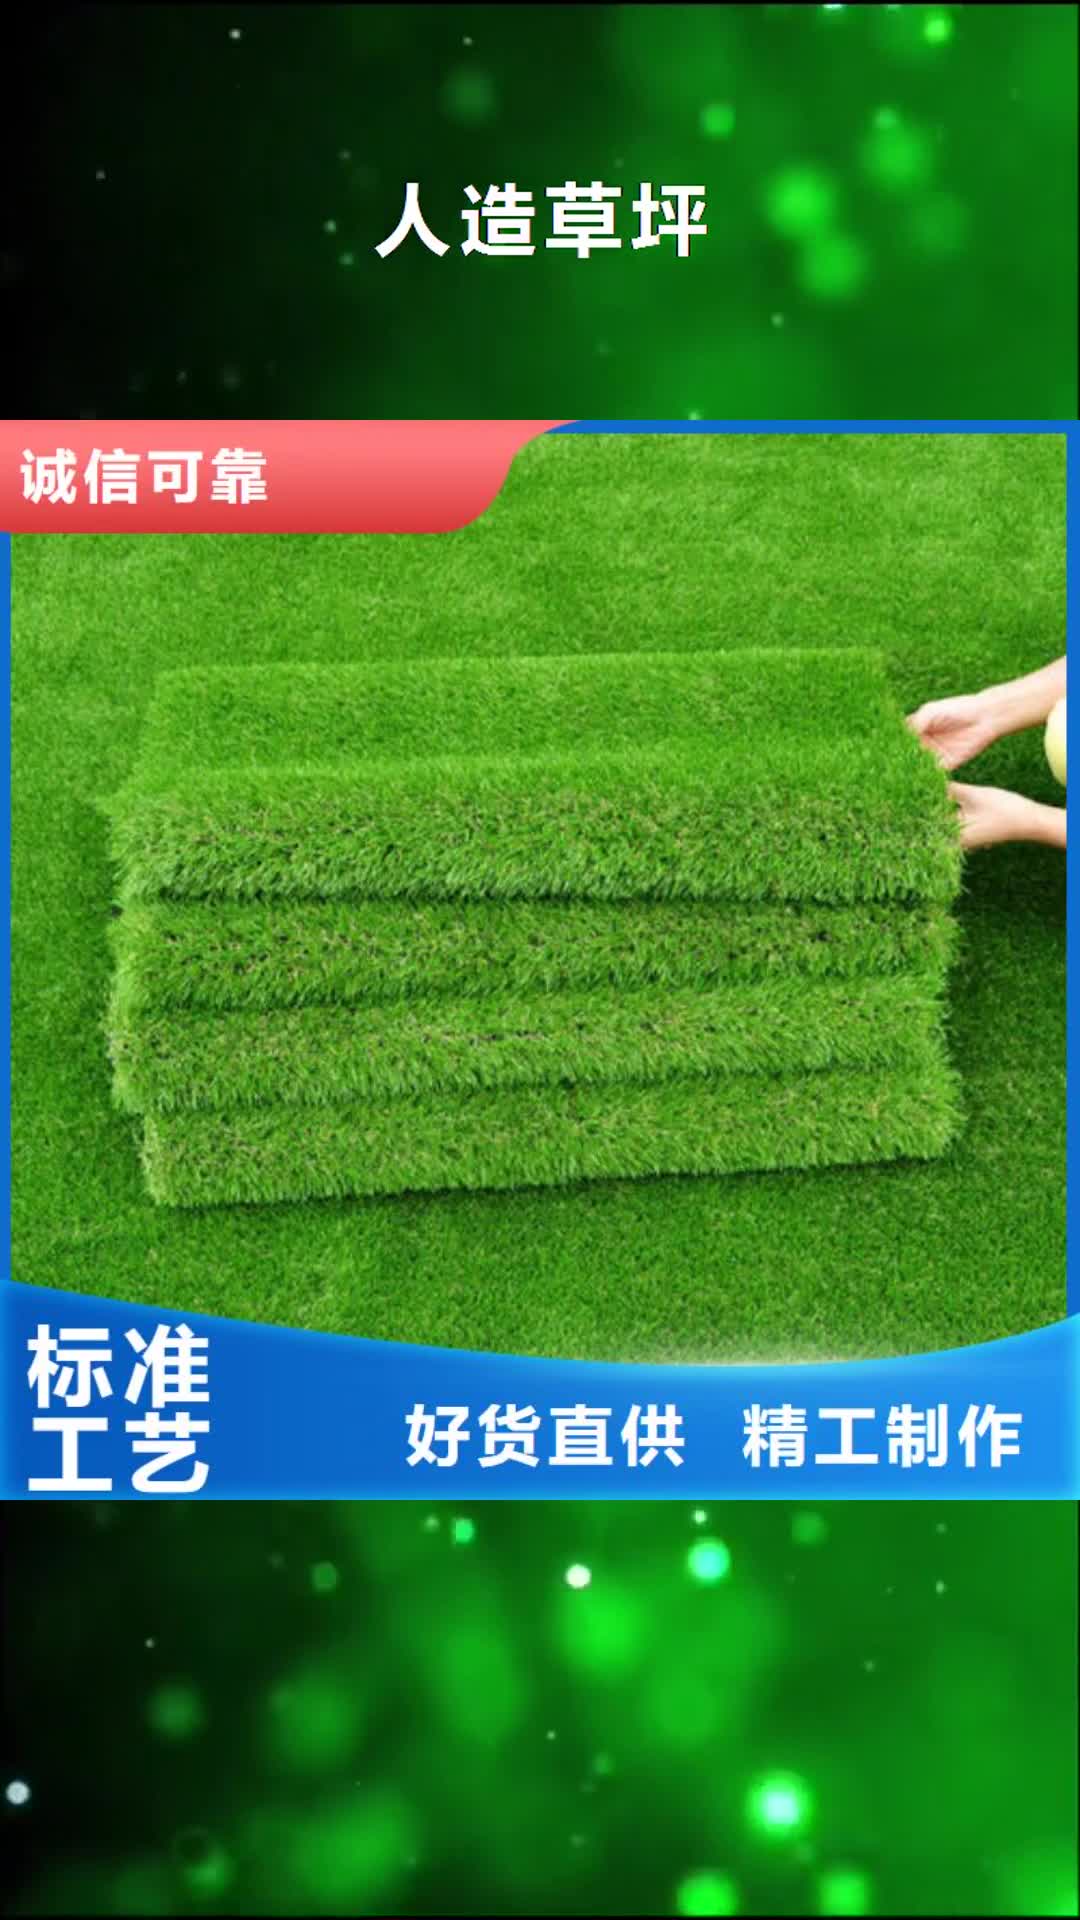 【萍乡 人造草坪,PVC塑胶地板专业完善售后】